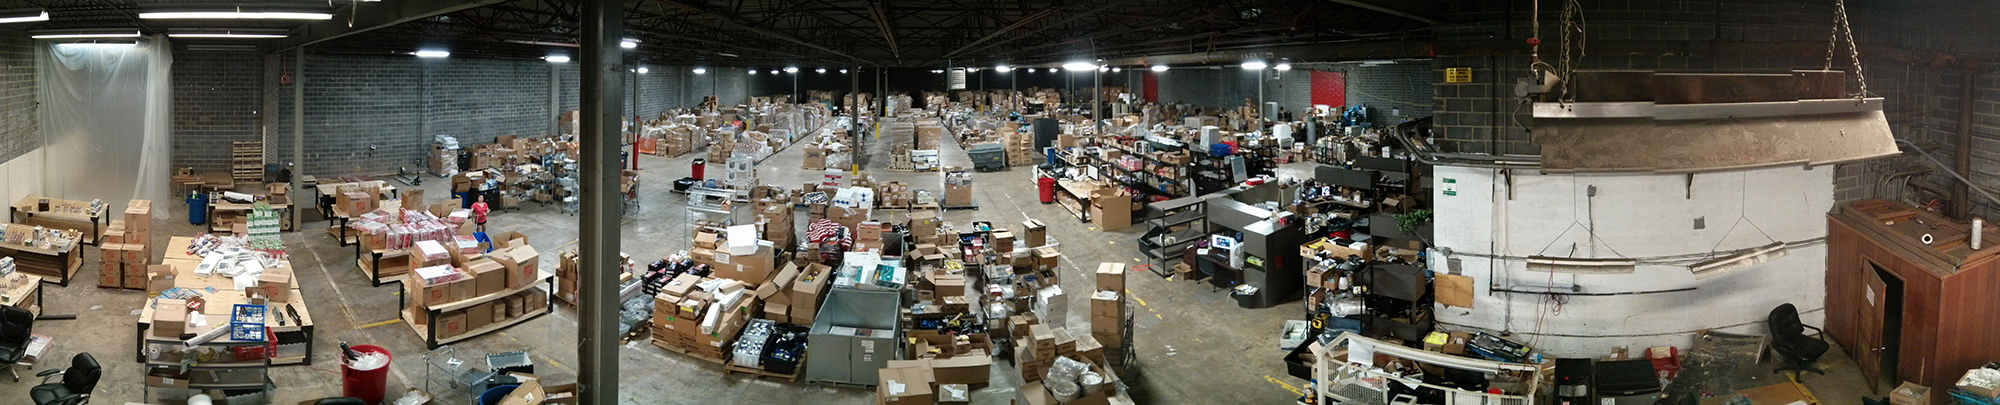 Warehouse Image